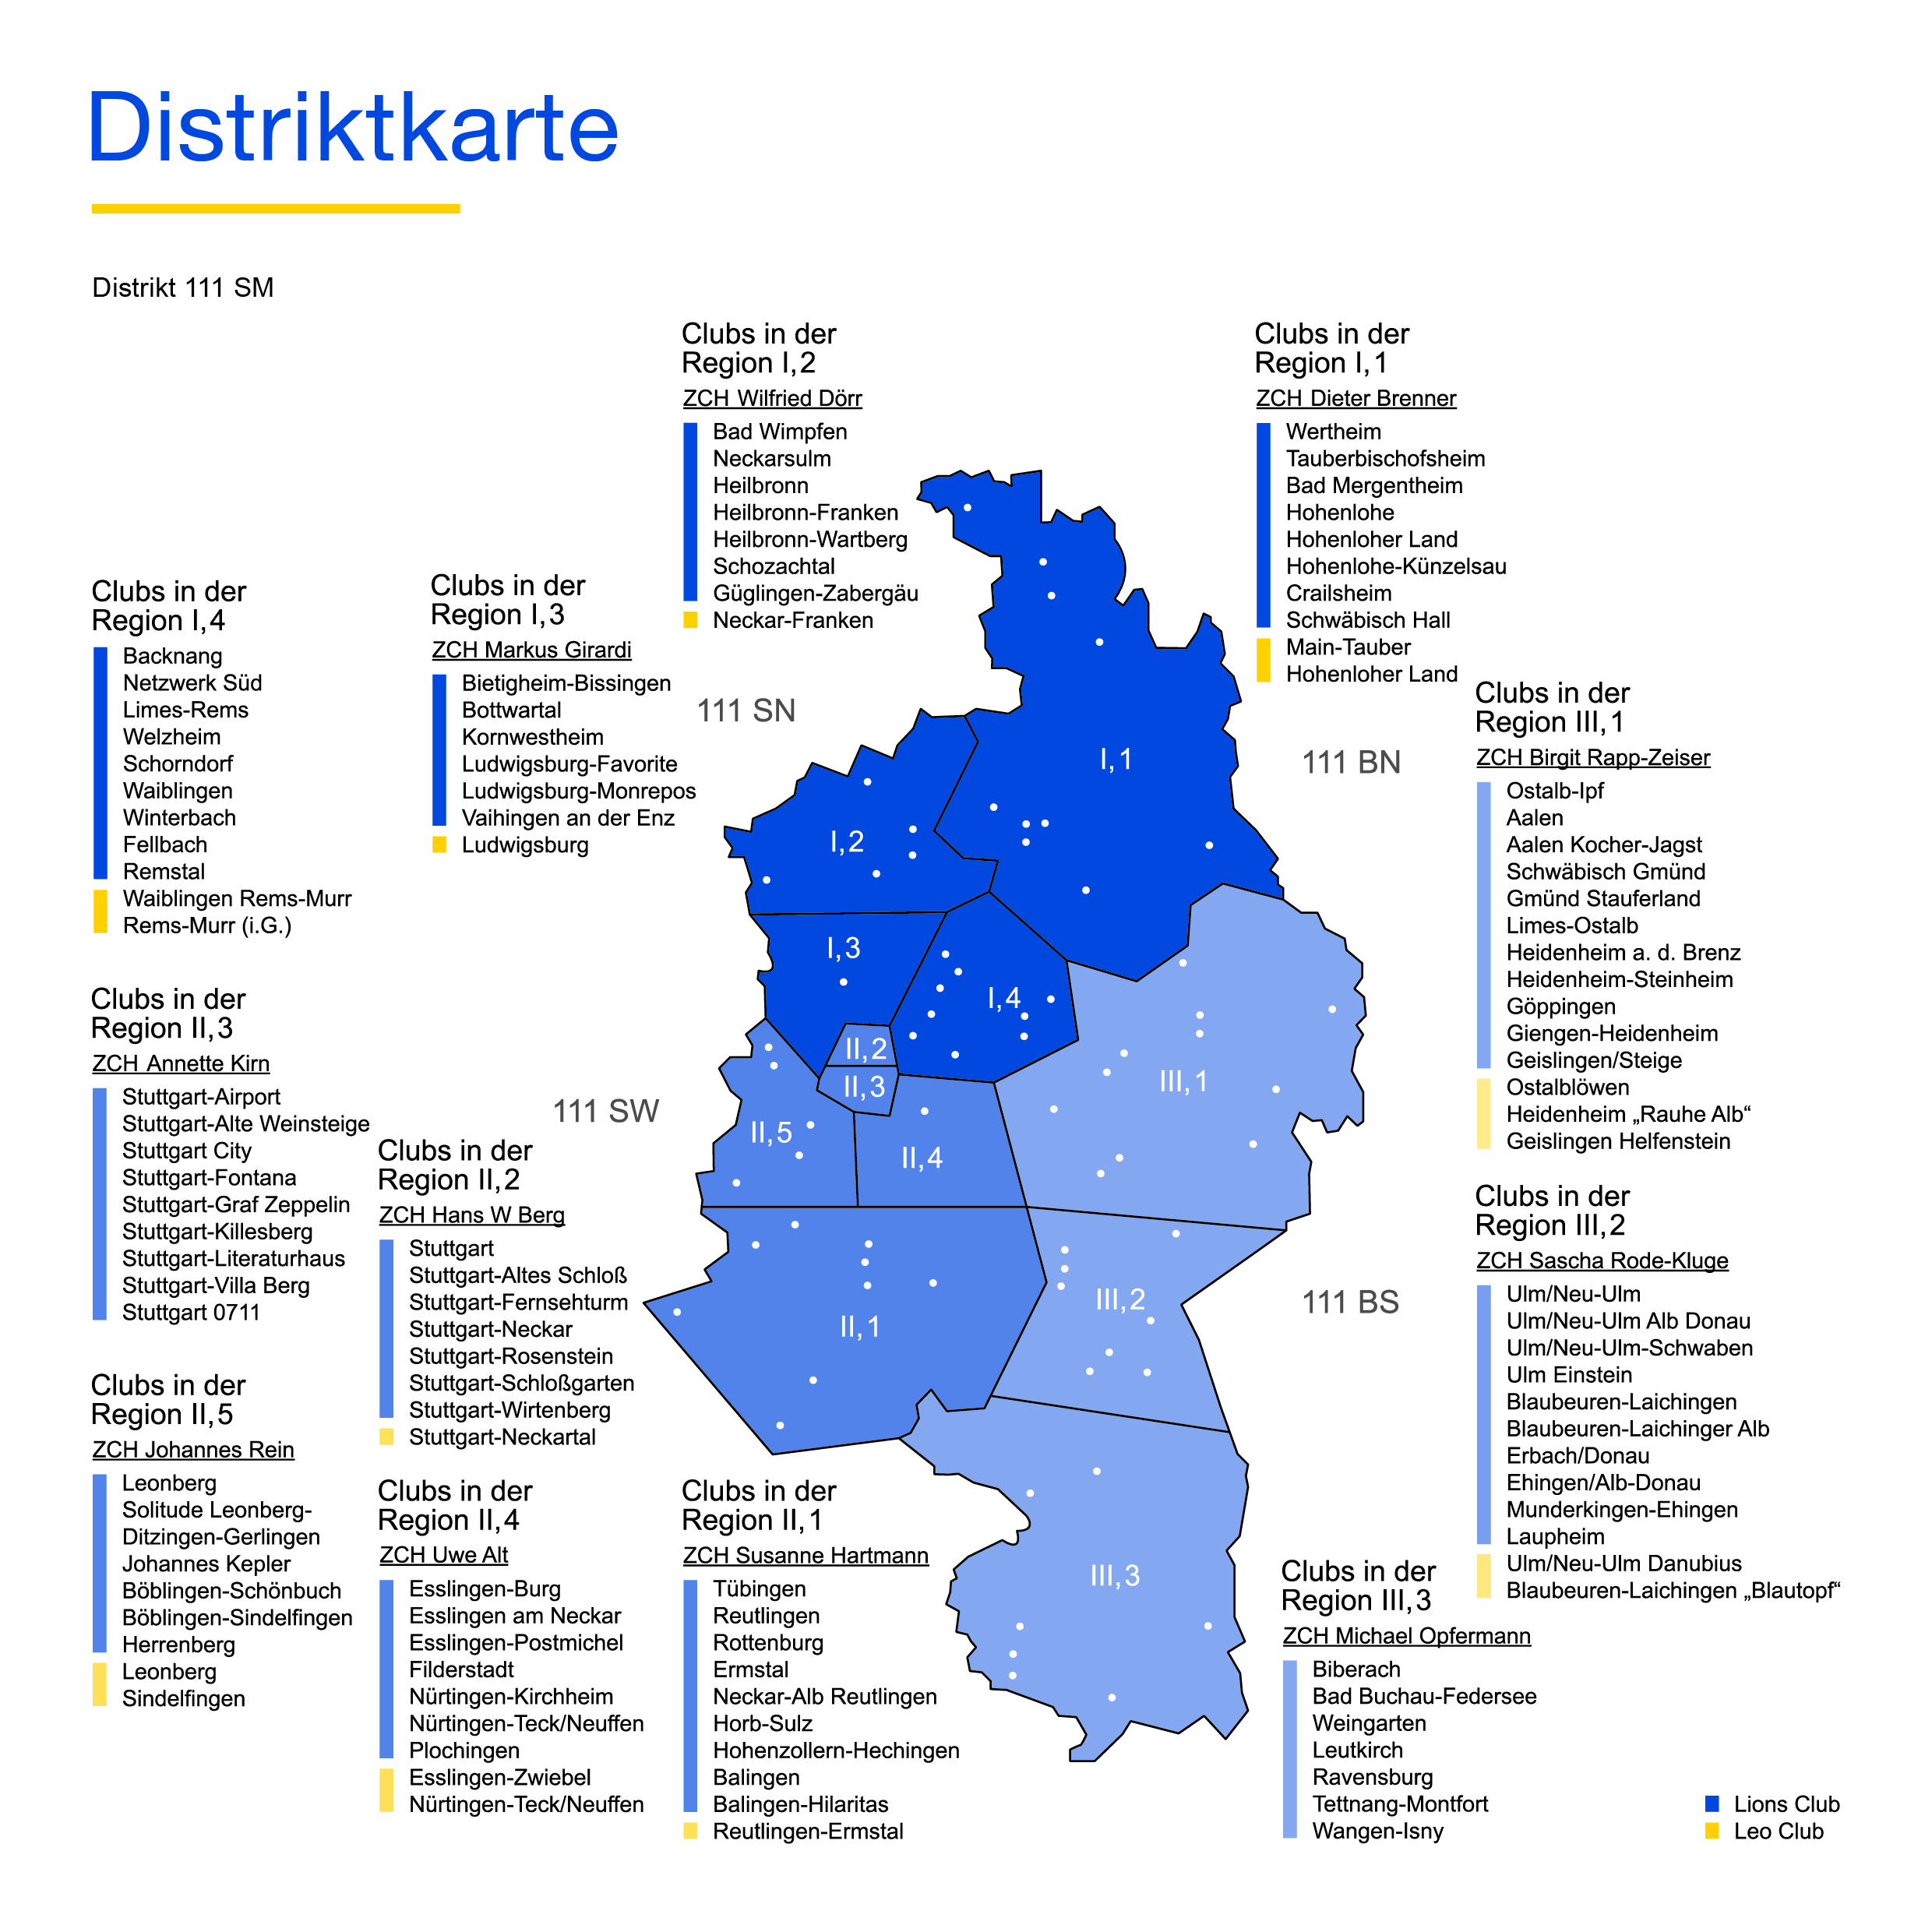 Distriktkarte mit der Darstellung der Clubs